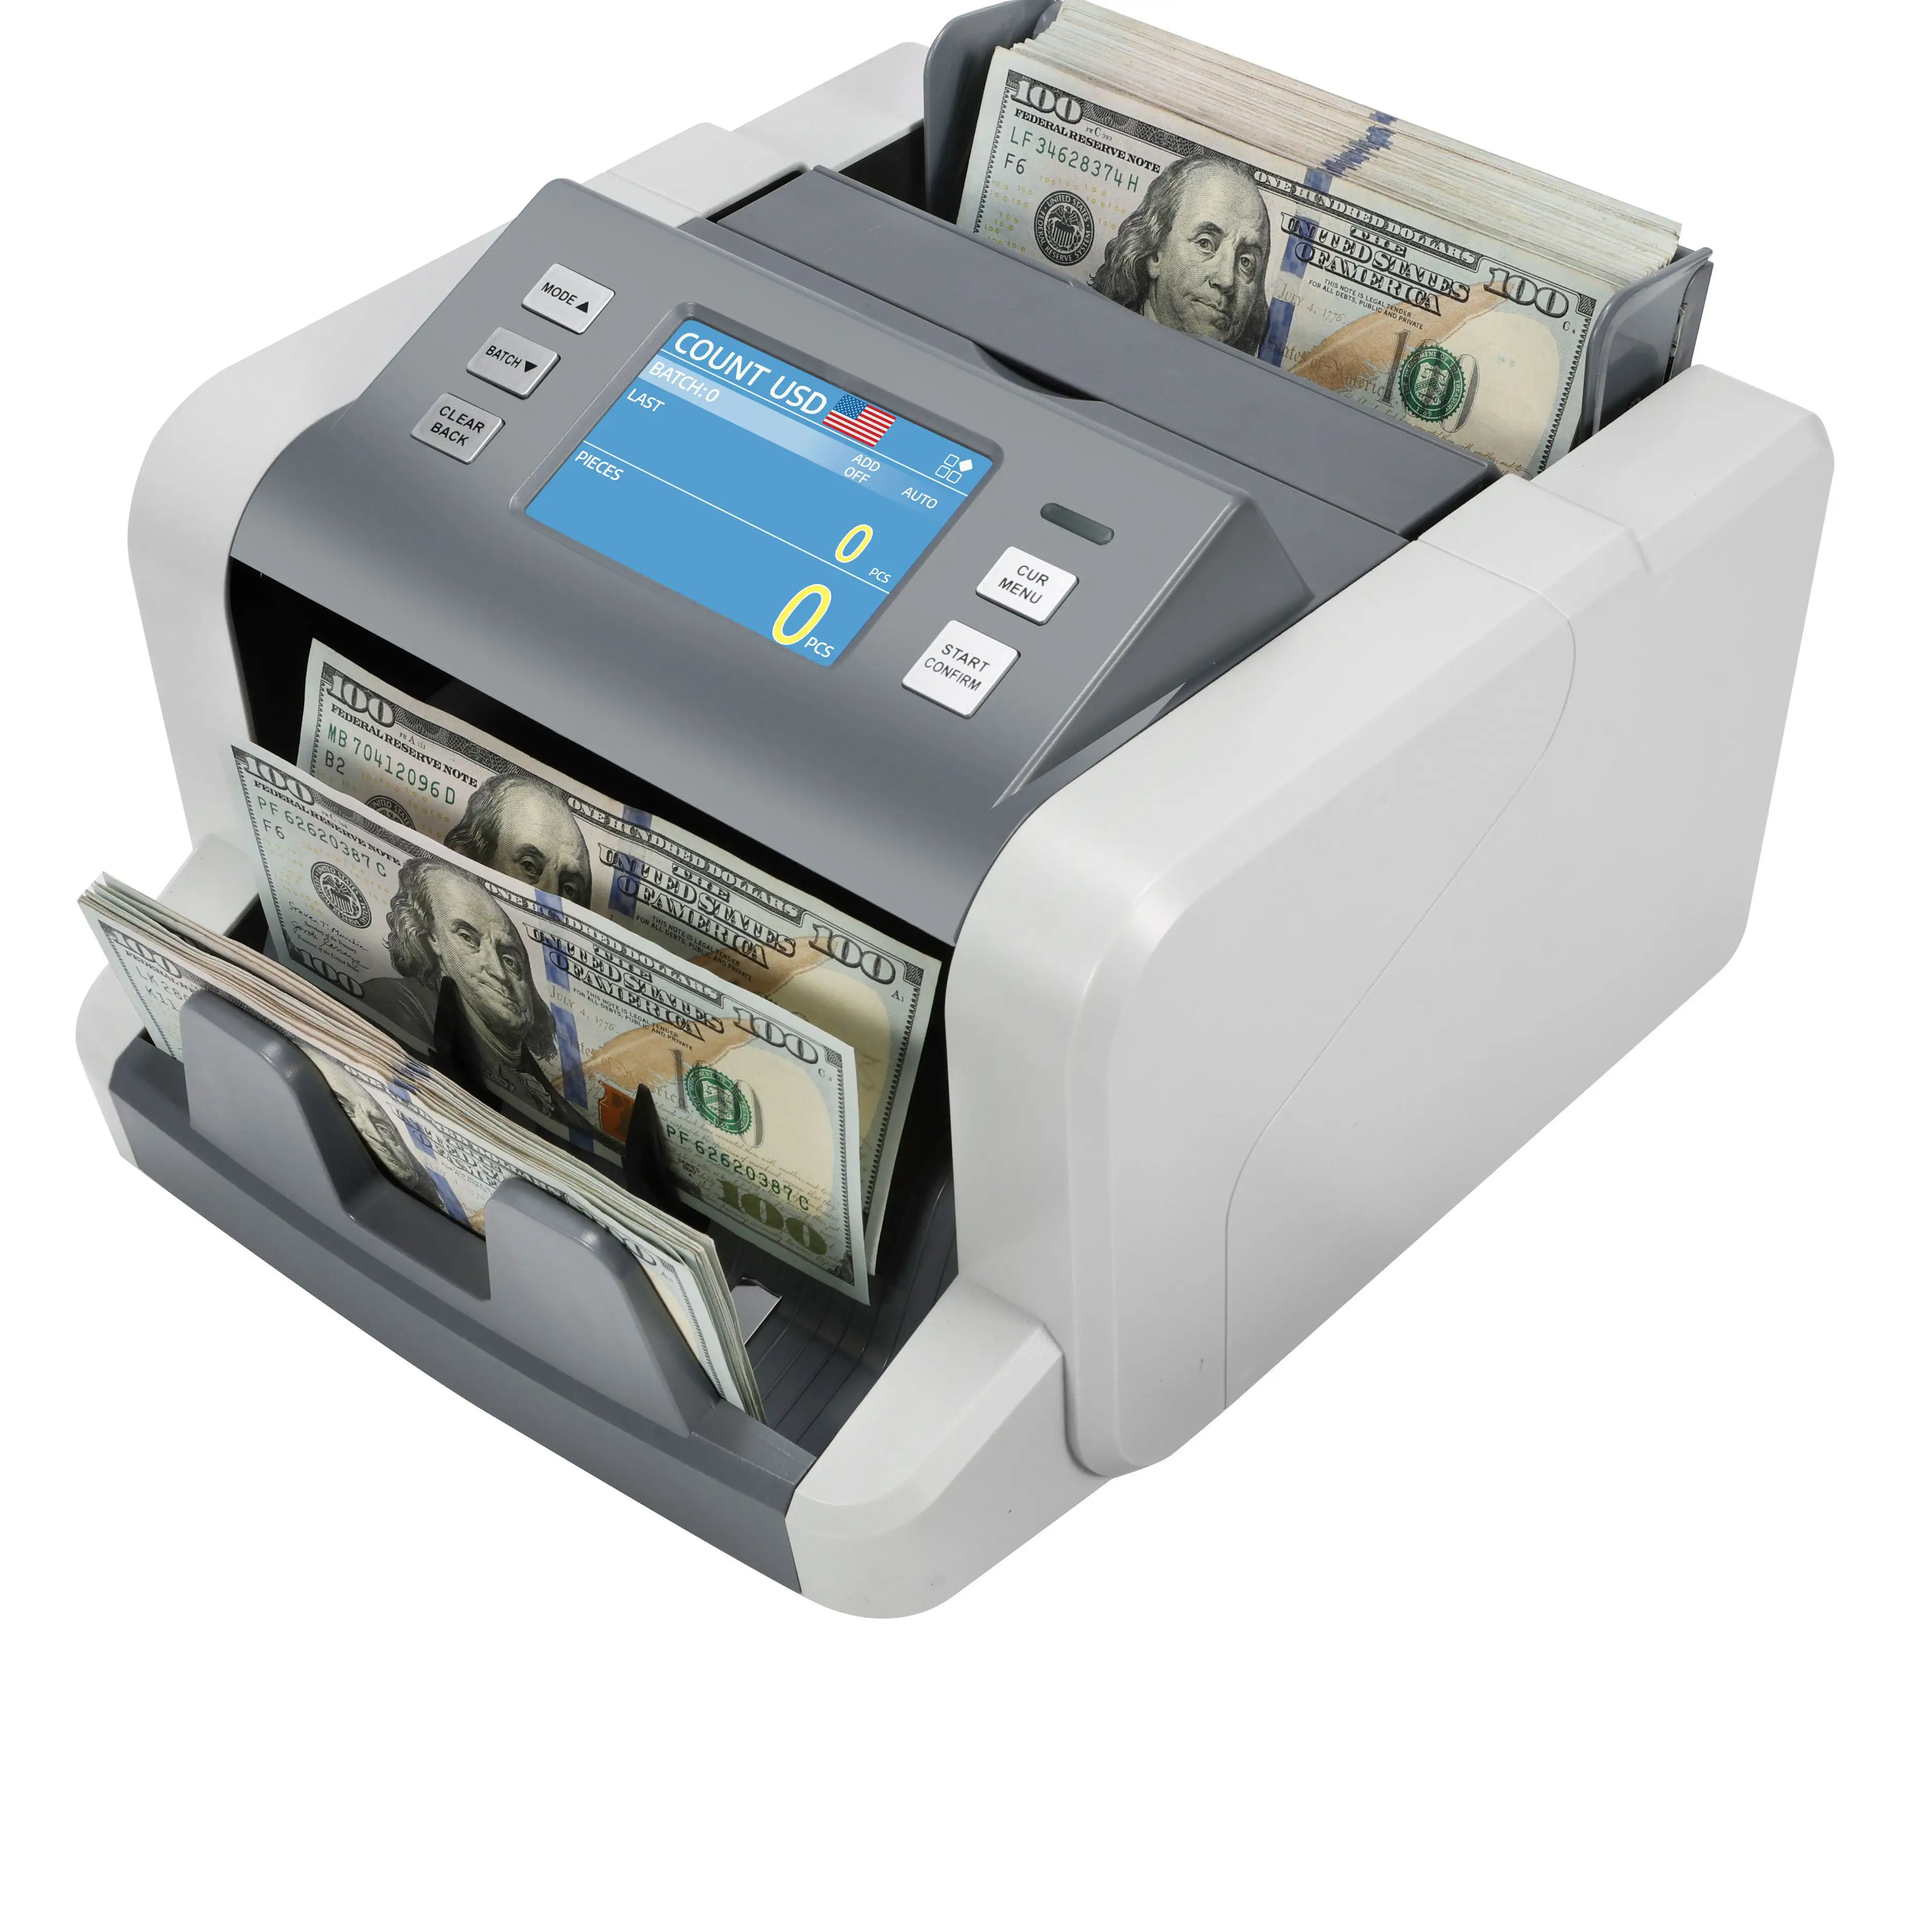 HL-80 contador de valor misto com detecção de notas forjadas/contagem de dinheiro/contador de dinheiro único CIS IR MG UV de alta precisão